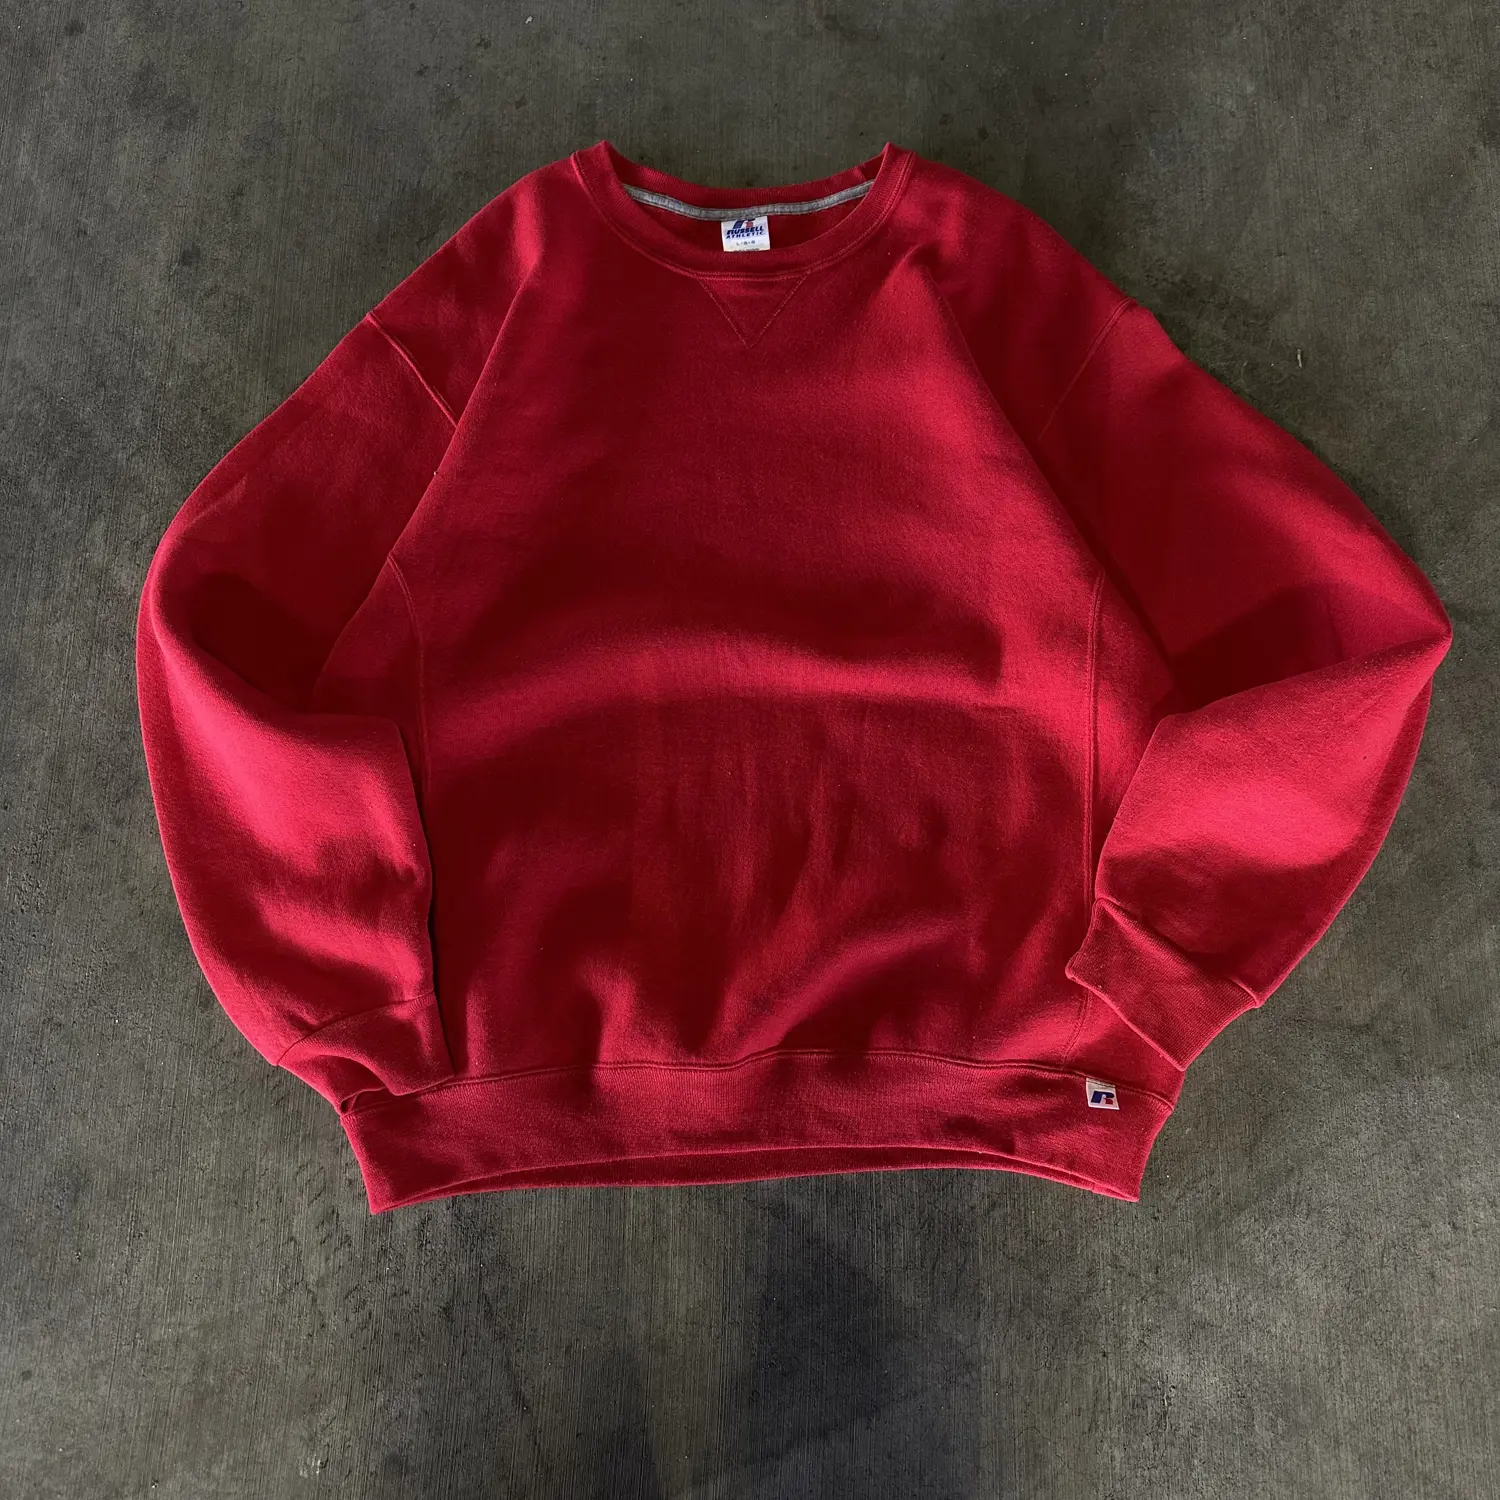 Vintage Russell Athletic Red Sweatshirt